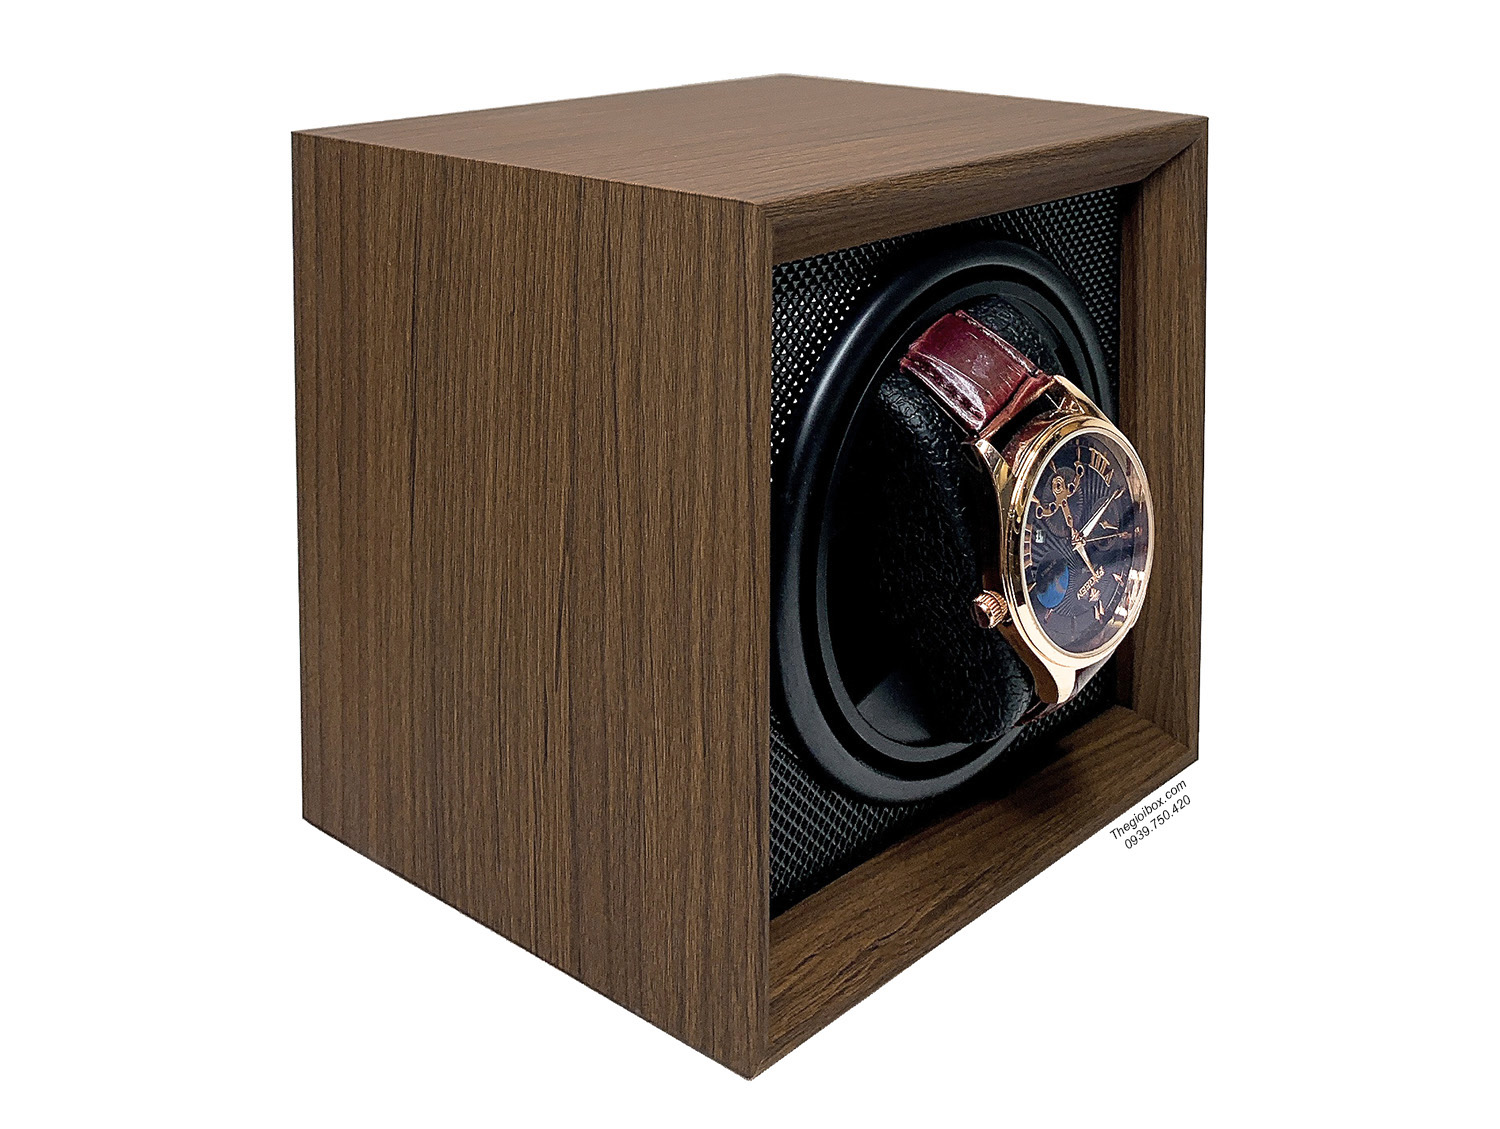 Hộp xoay đồng hồ cơ 1 không nắp vỏ gỗ nội thất nhựa đen giá rẻ